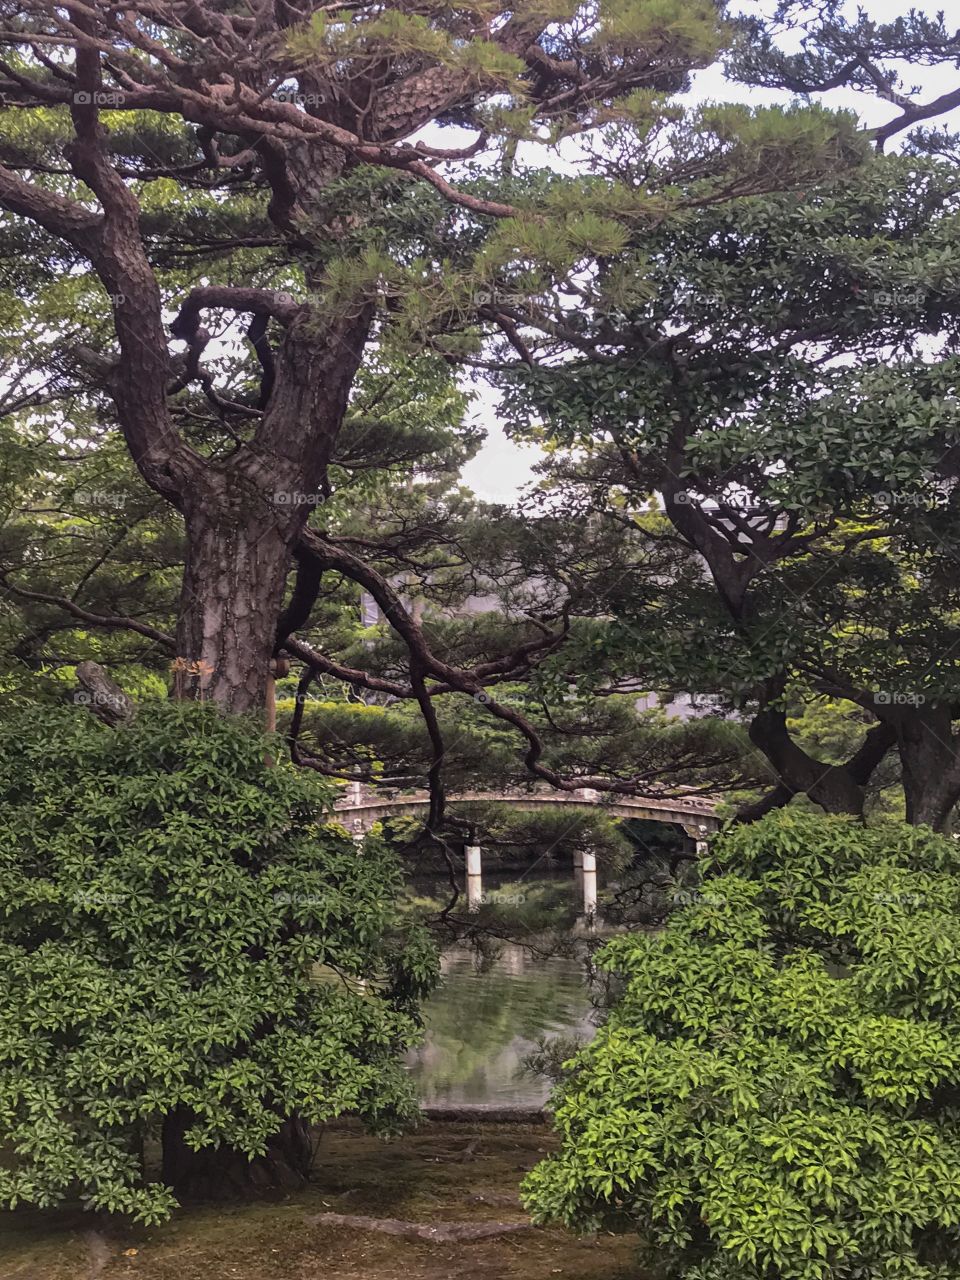 Trees & gardens in zen like beauty 